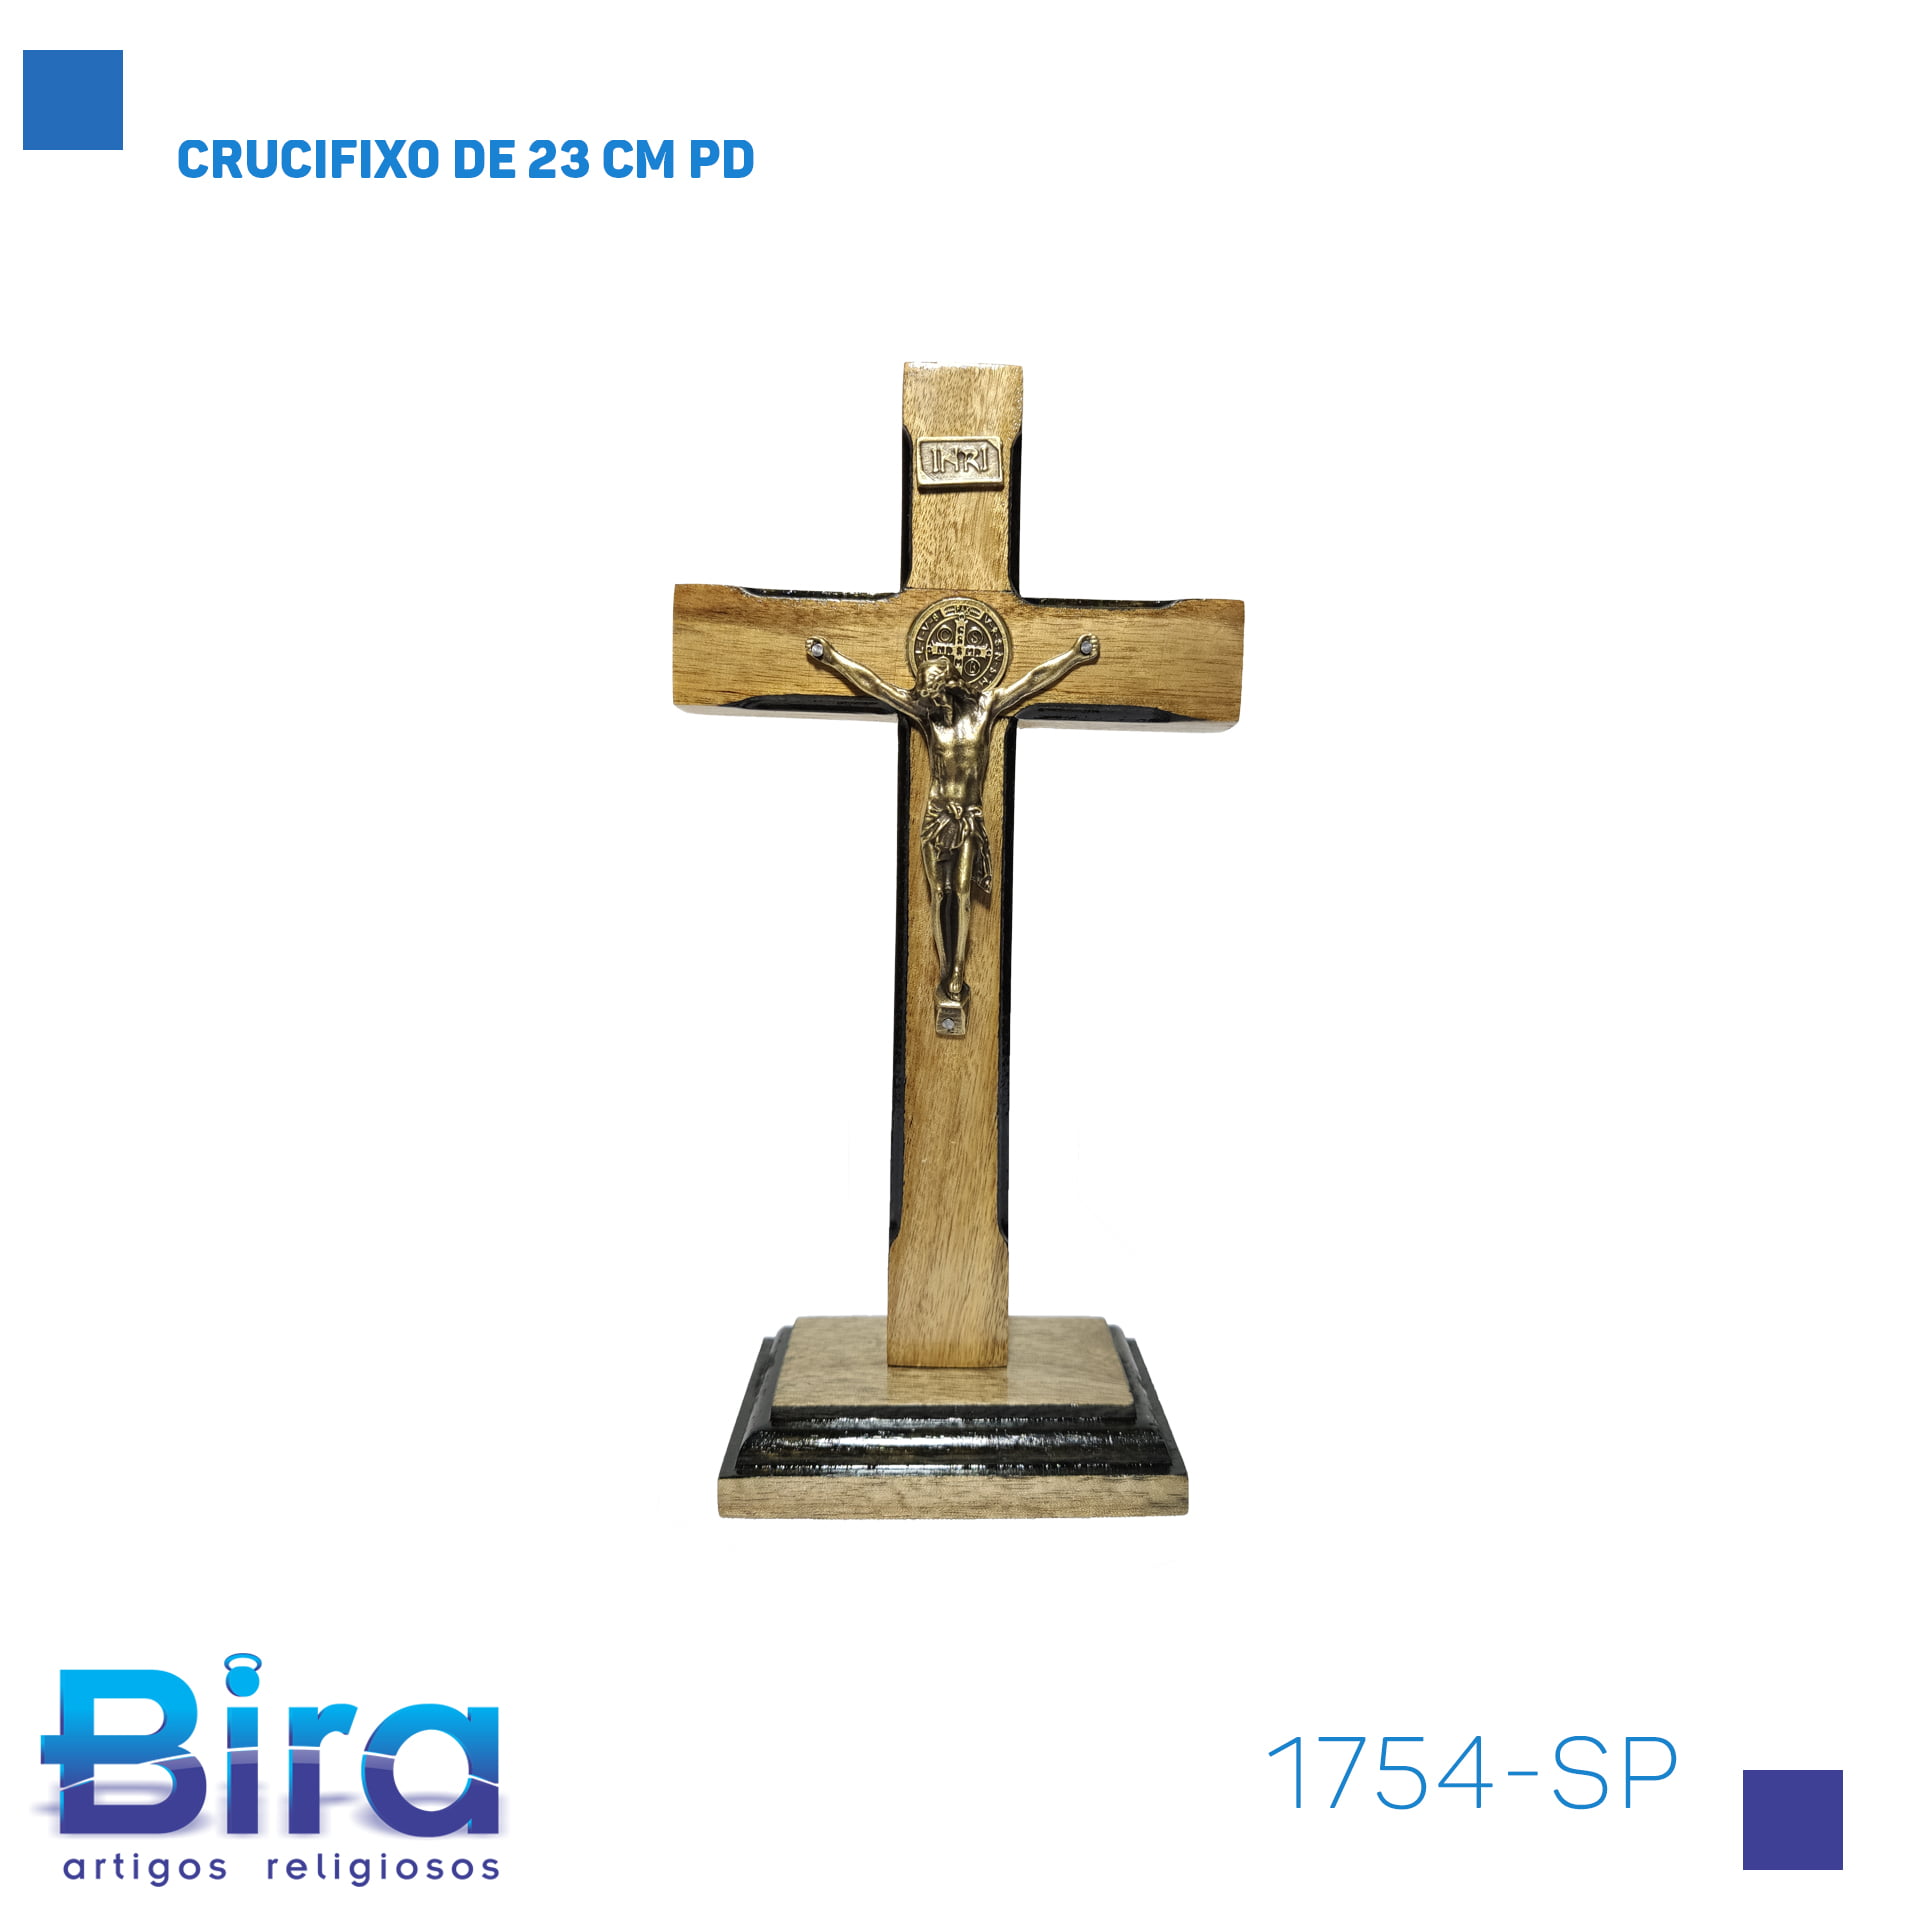 Bira Artigos Religiosos - CRUCIFIXO DE 23 CM PD - Cód. 1754-SP